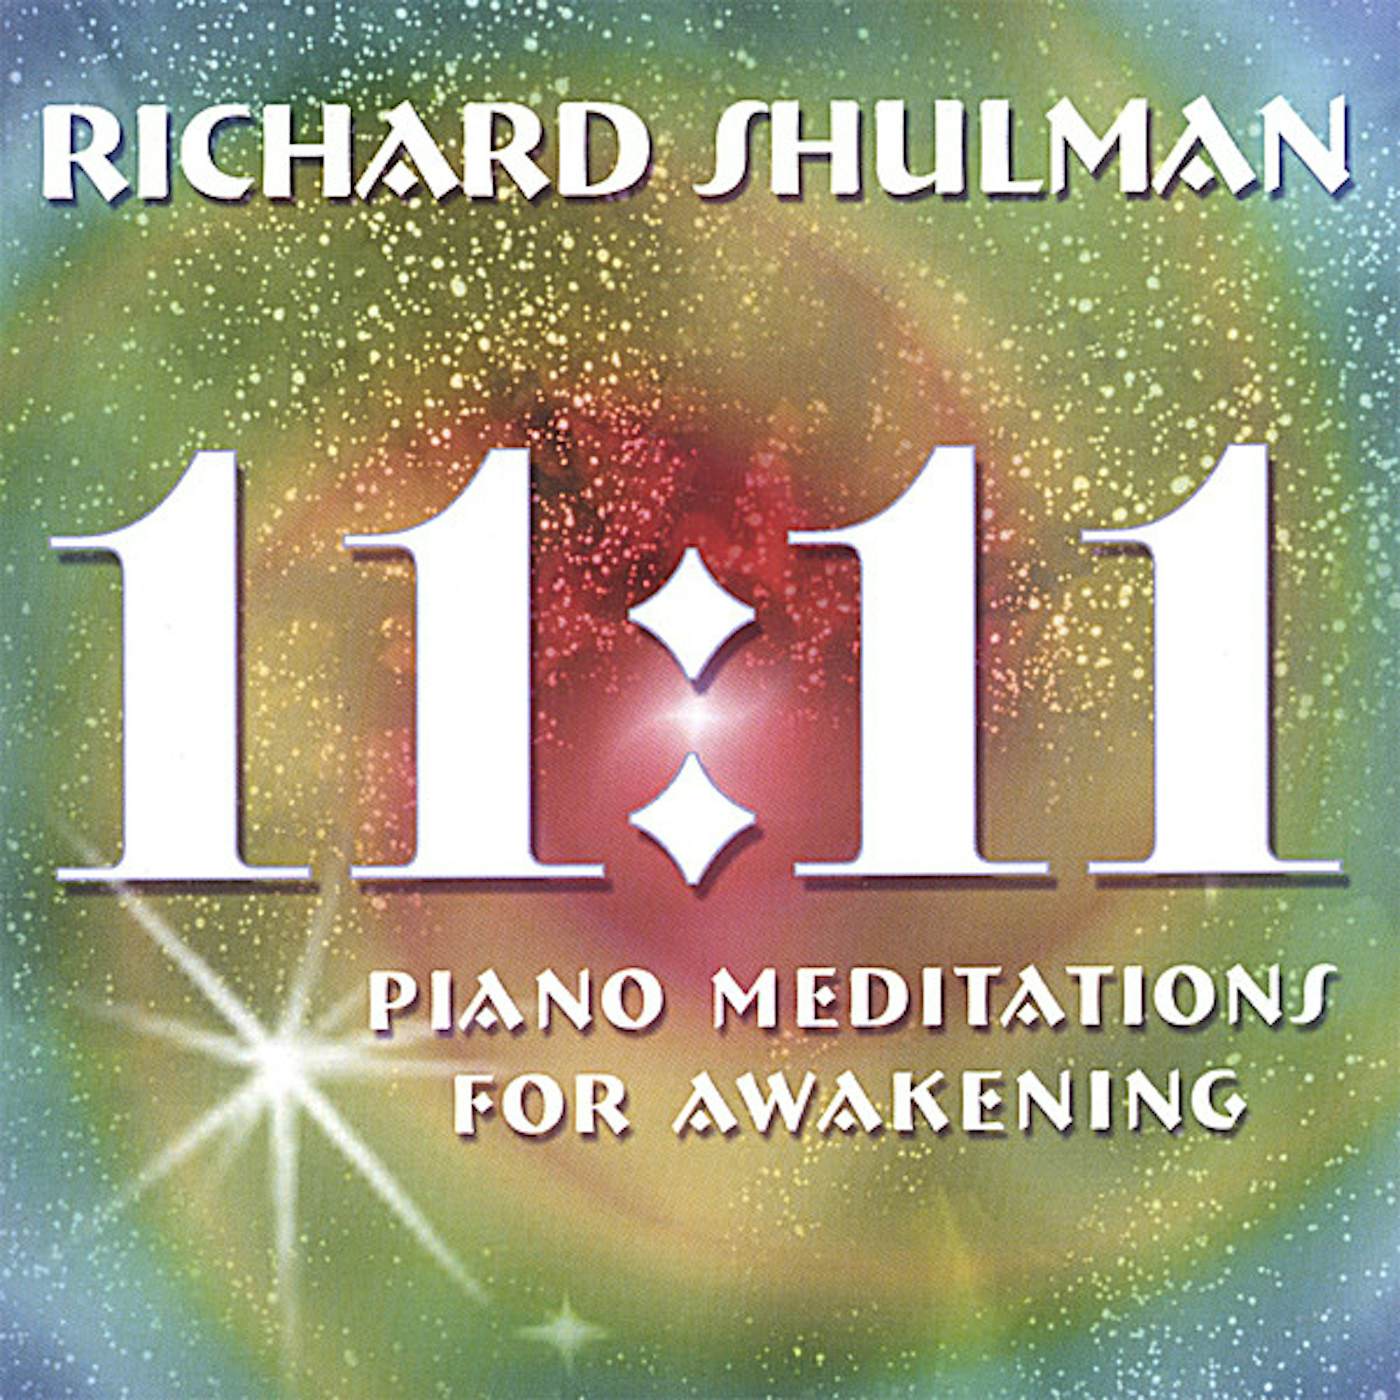 Richard Shulman 11:11 PIANO MEDITATIONS FOR AWAKENING CD